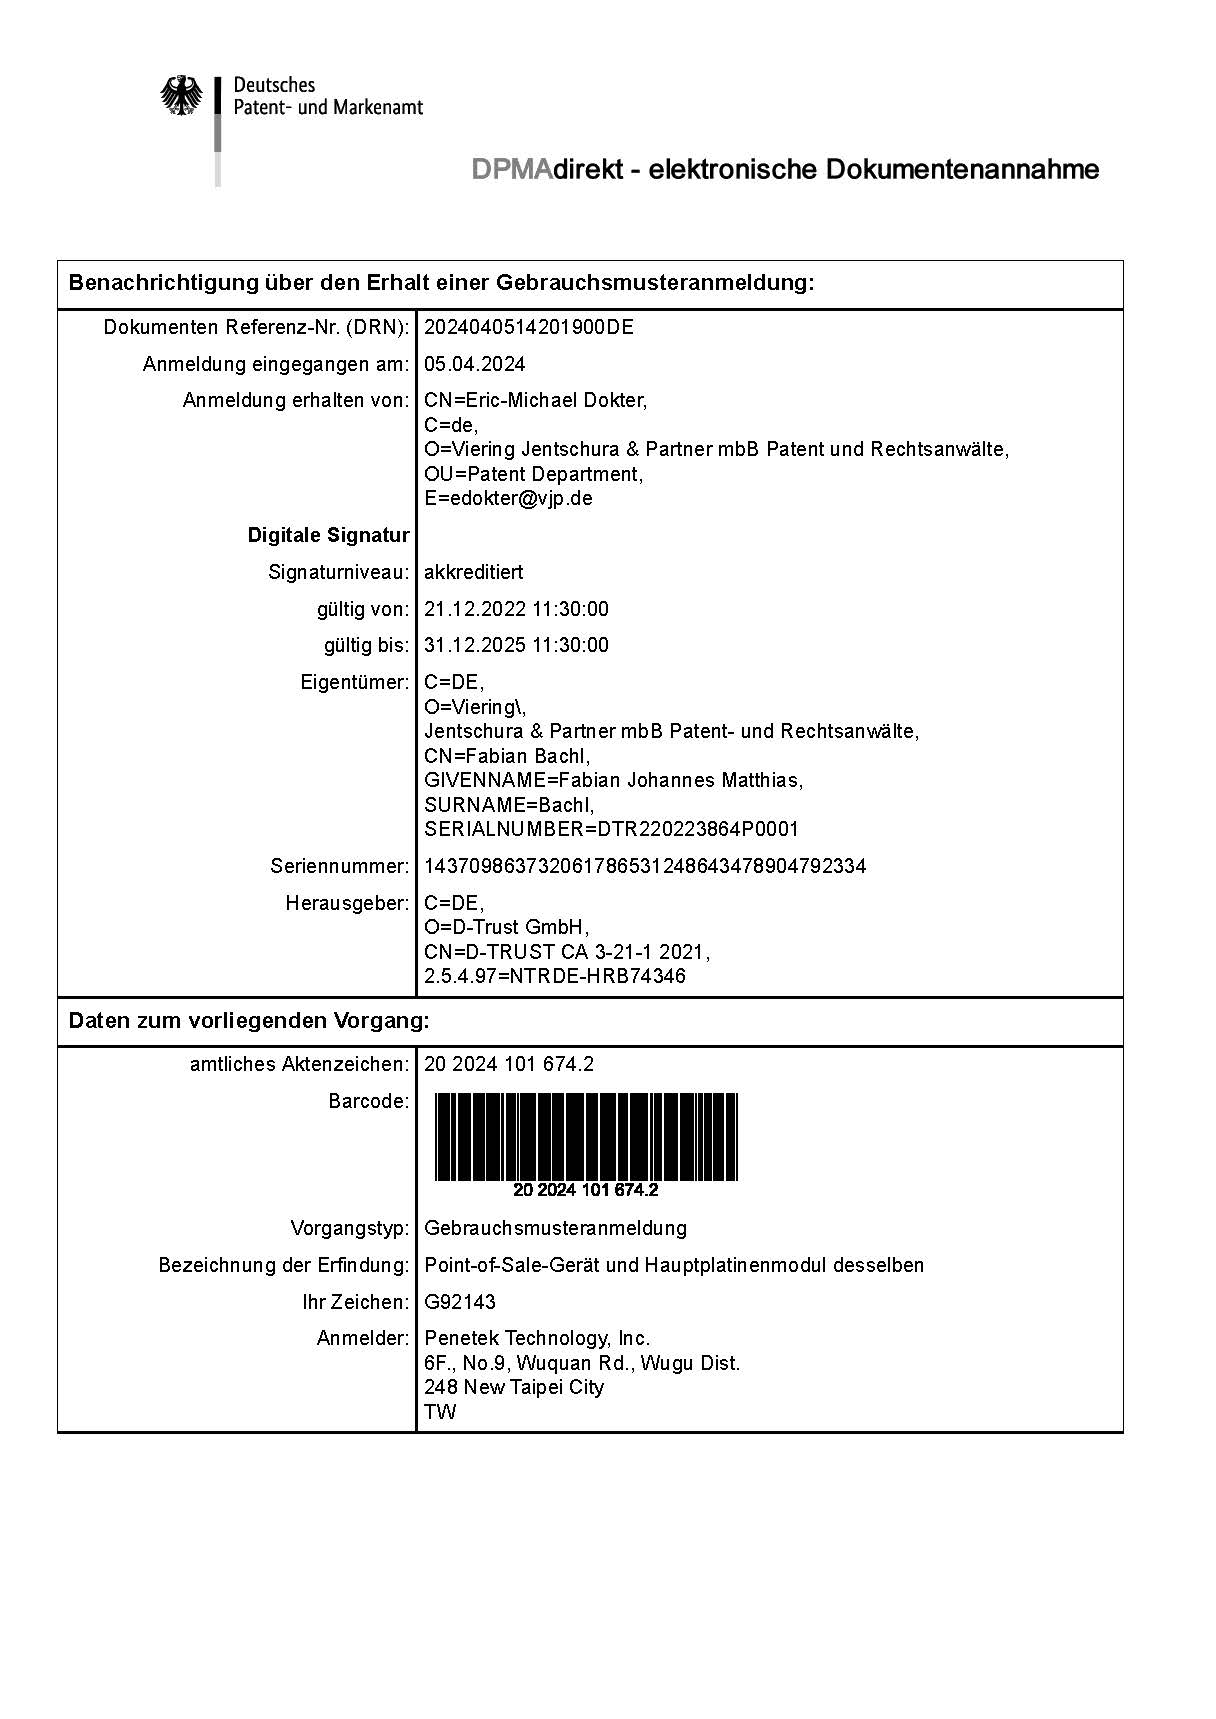 Modular_POS_POE_German Patent